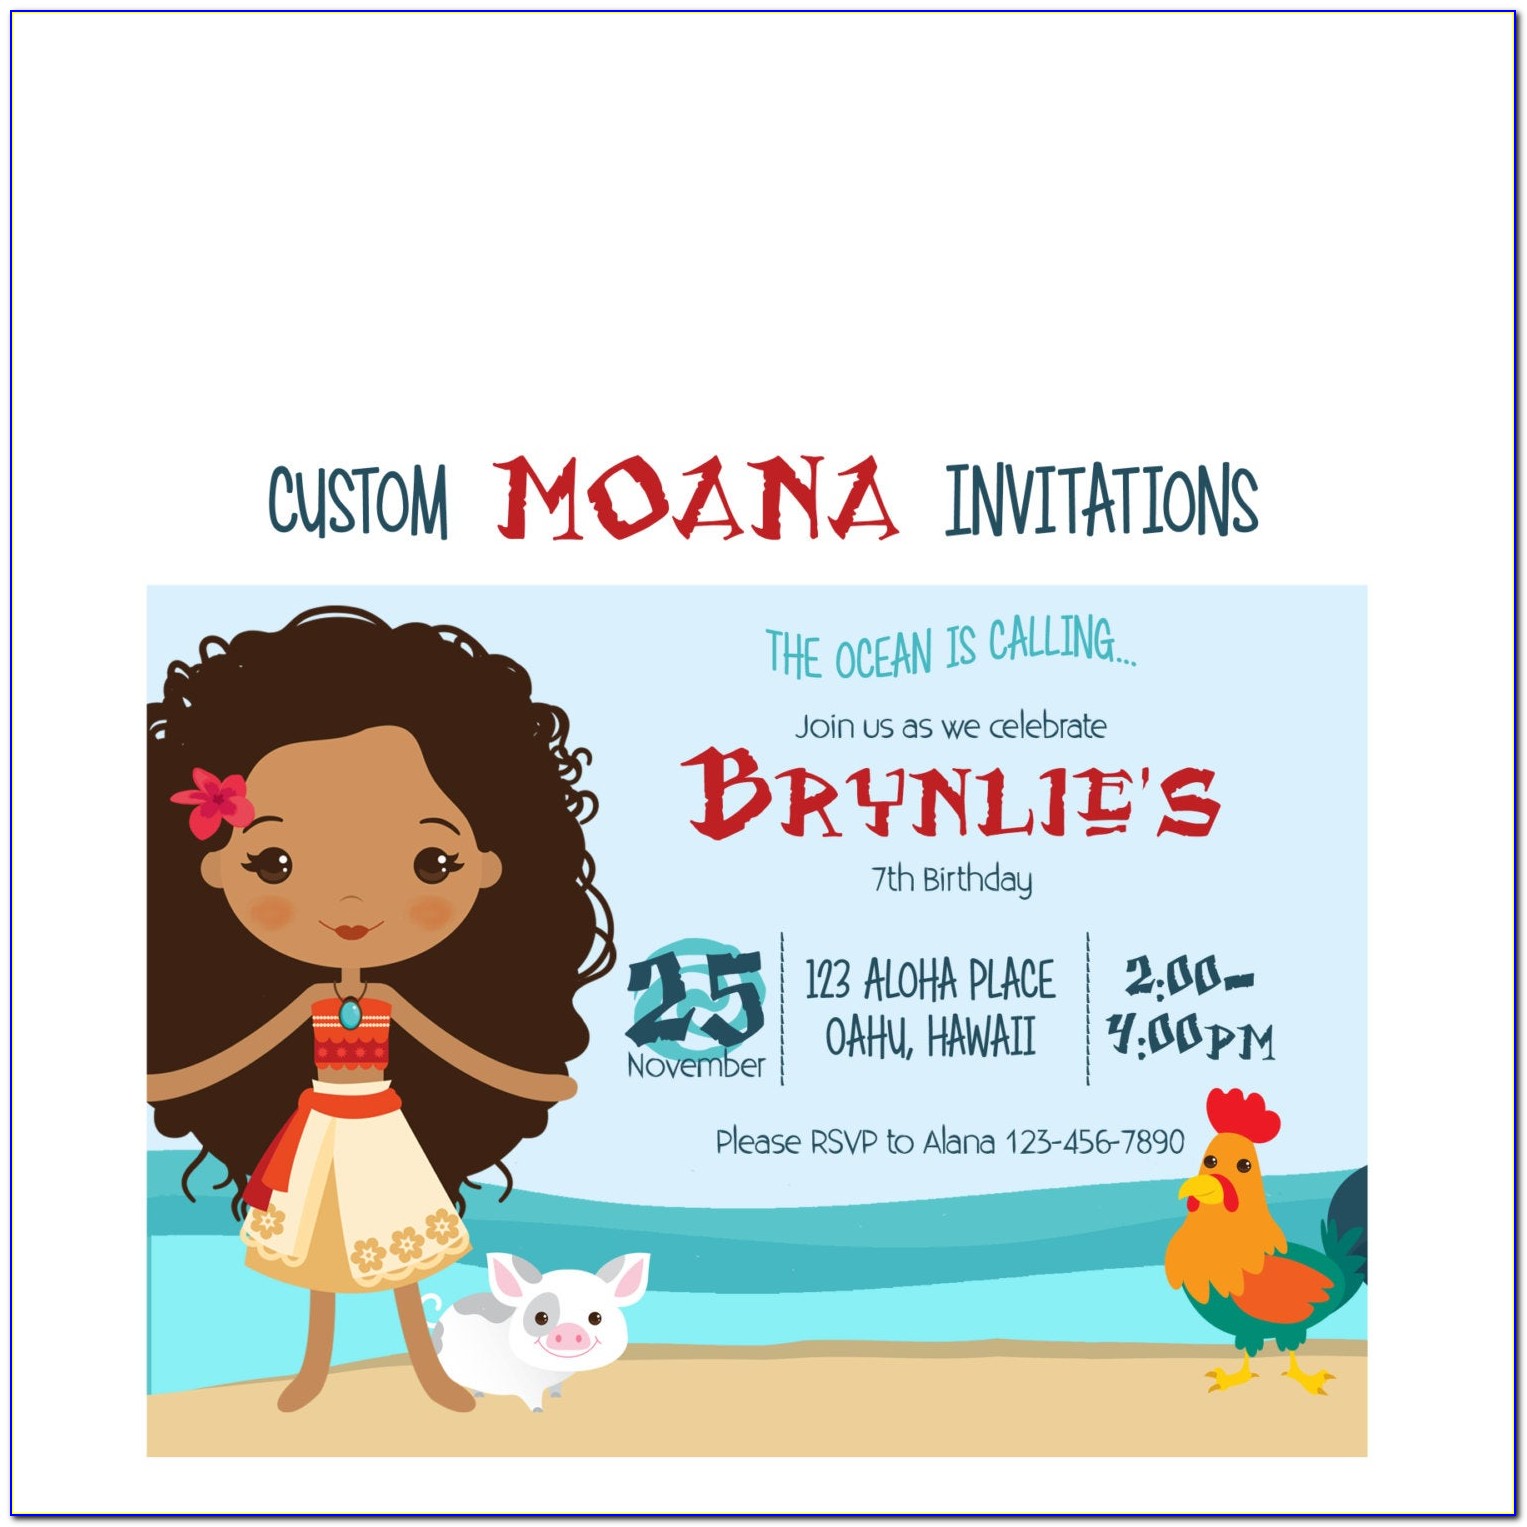 Baby Moana Custom Invitations